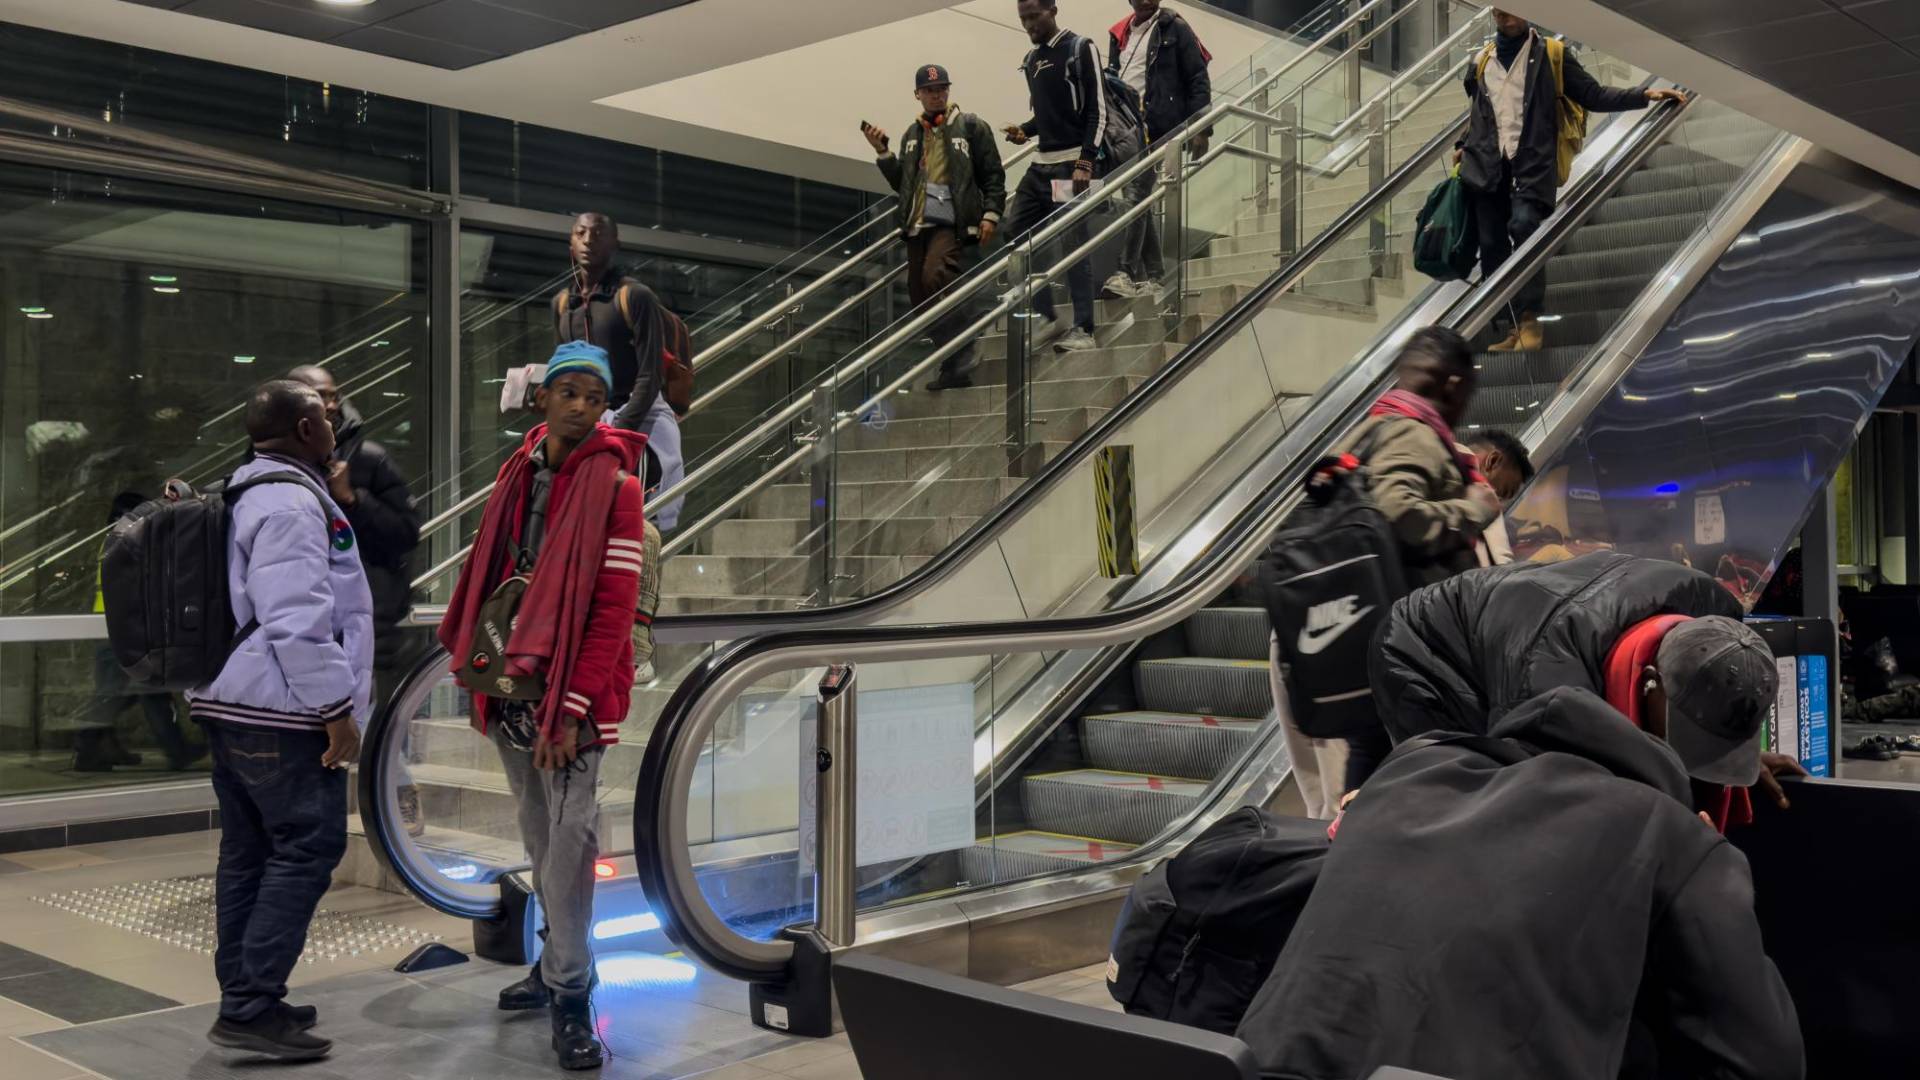 $!Migrantes africanos en el aeropuerto El Dorado de Bogotá esperan un vuelo a El Salvador, parte de su viaje a EU. (Federico Rios para The New York Times)